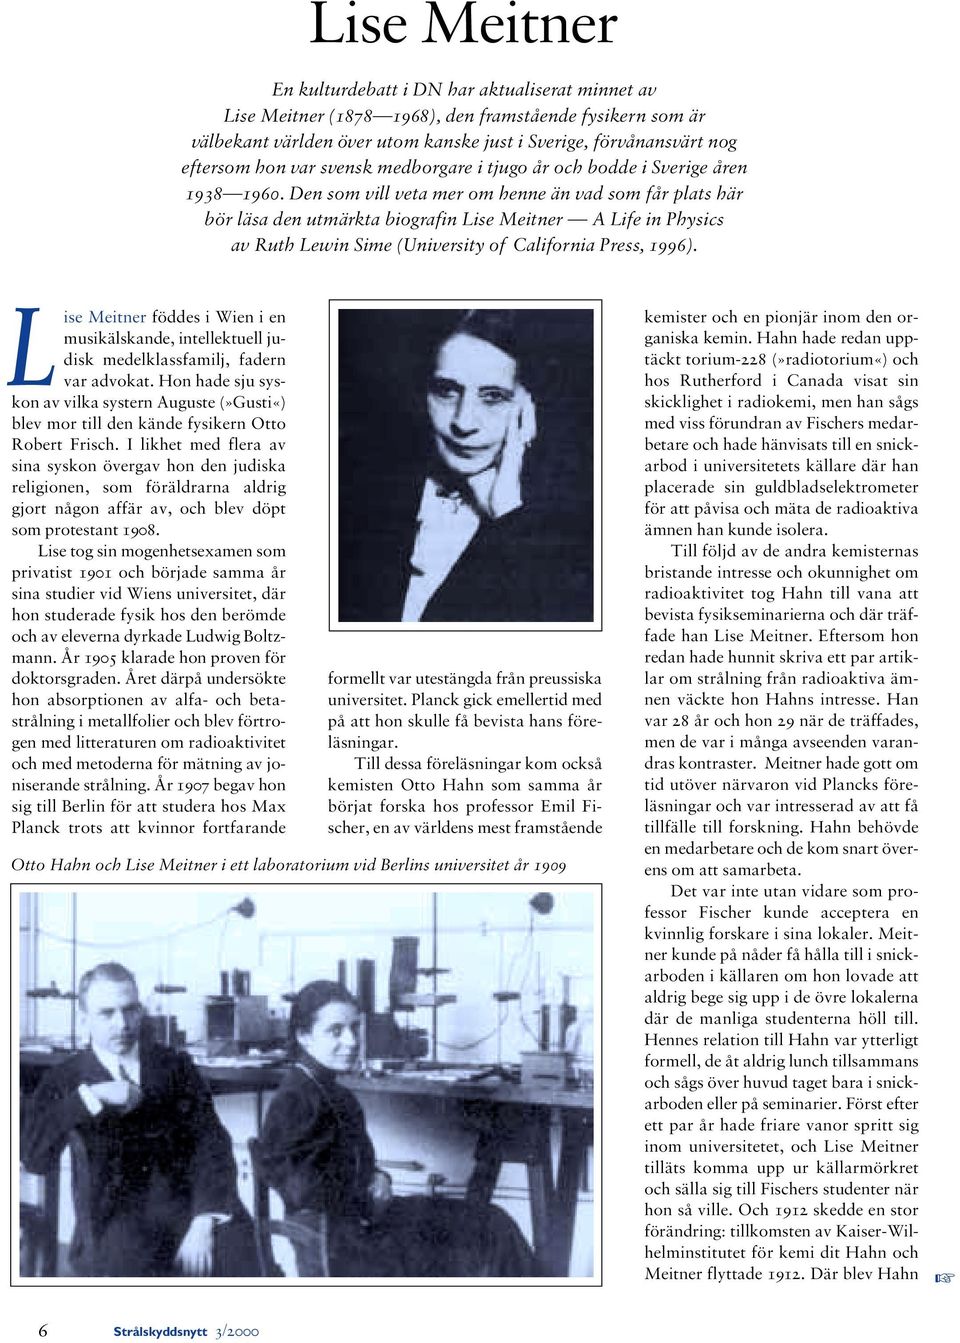 Den som vill veta mer om henne än vad som får plats här bör läsa den utmärkta biografin Lise Meitner A Life in Physics av Ruth Lewin Sime (University of California Press, 1996).